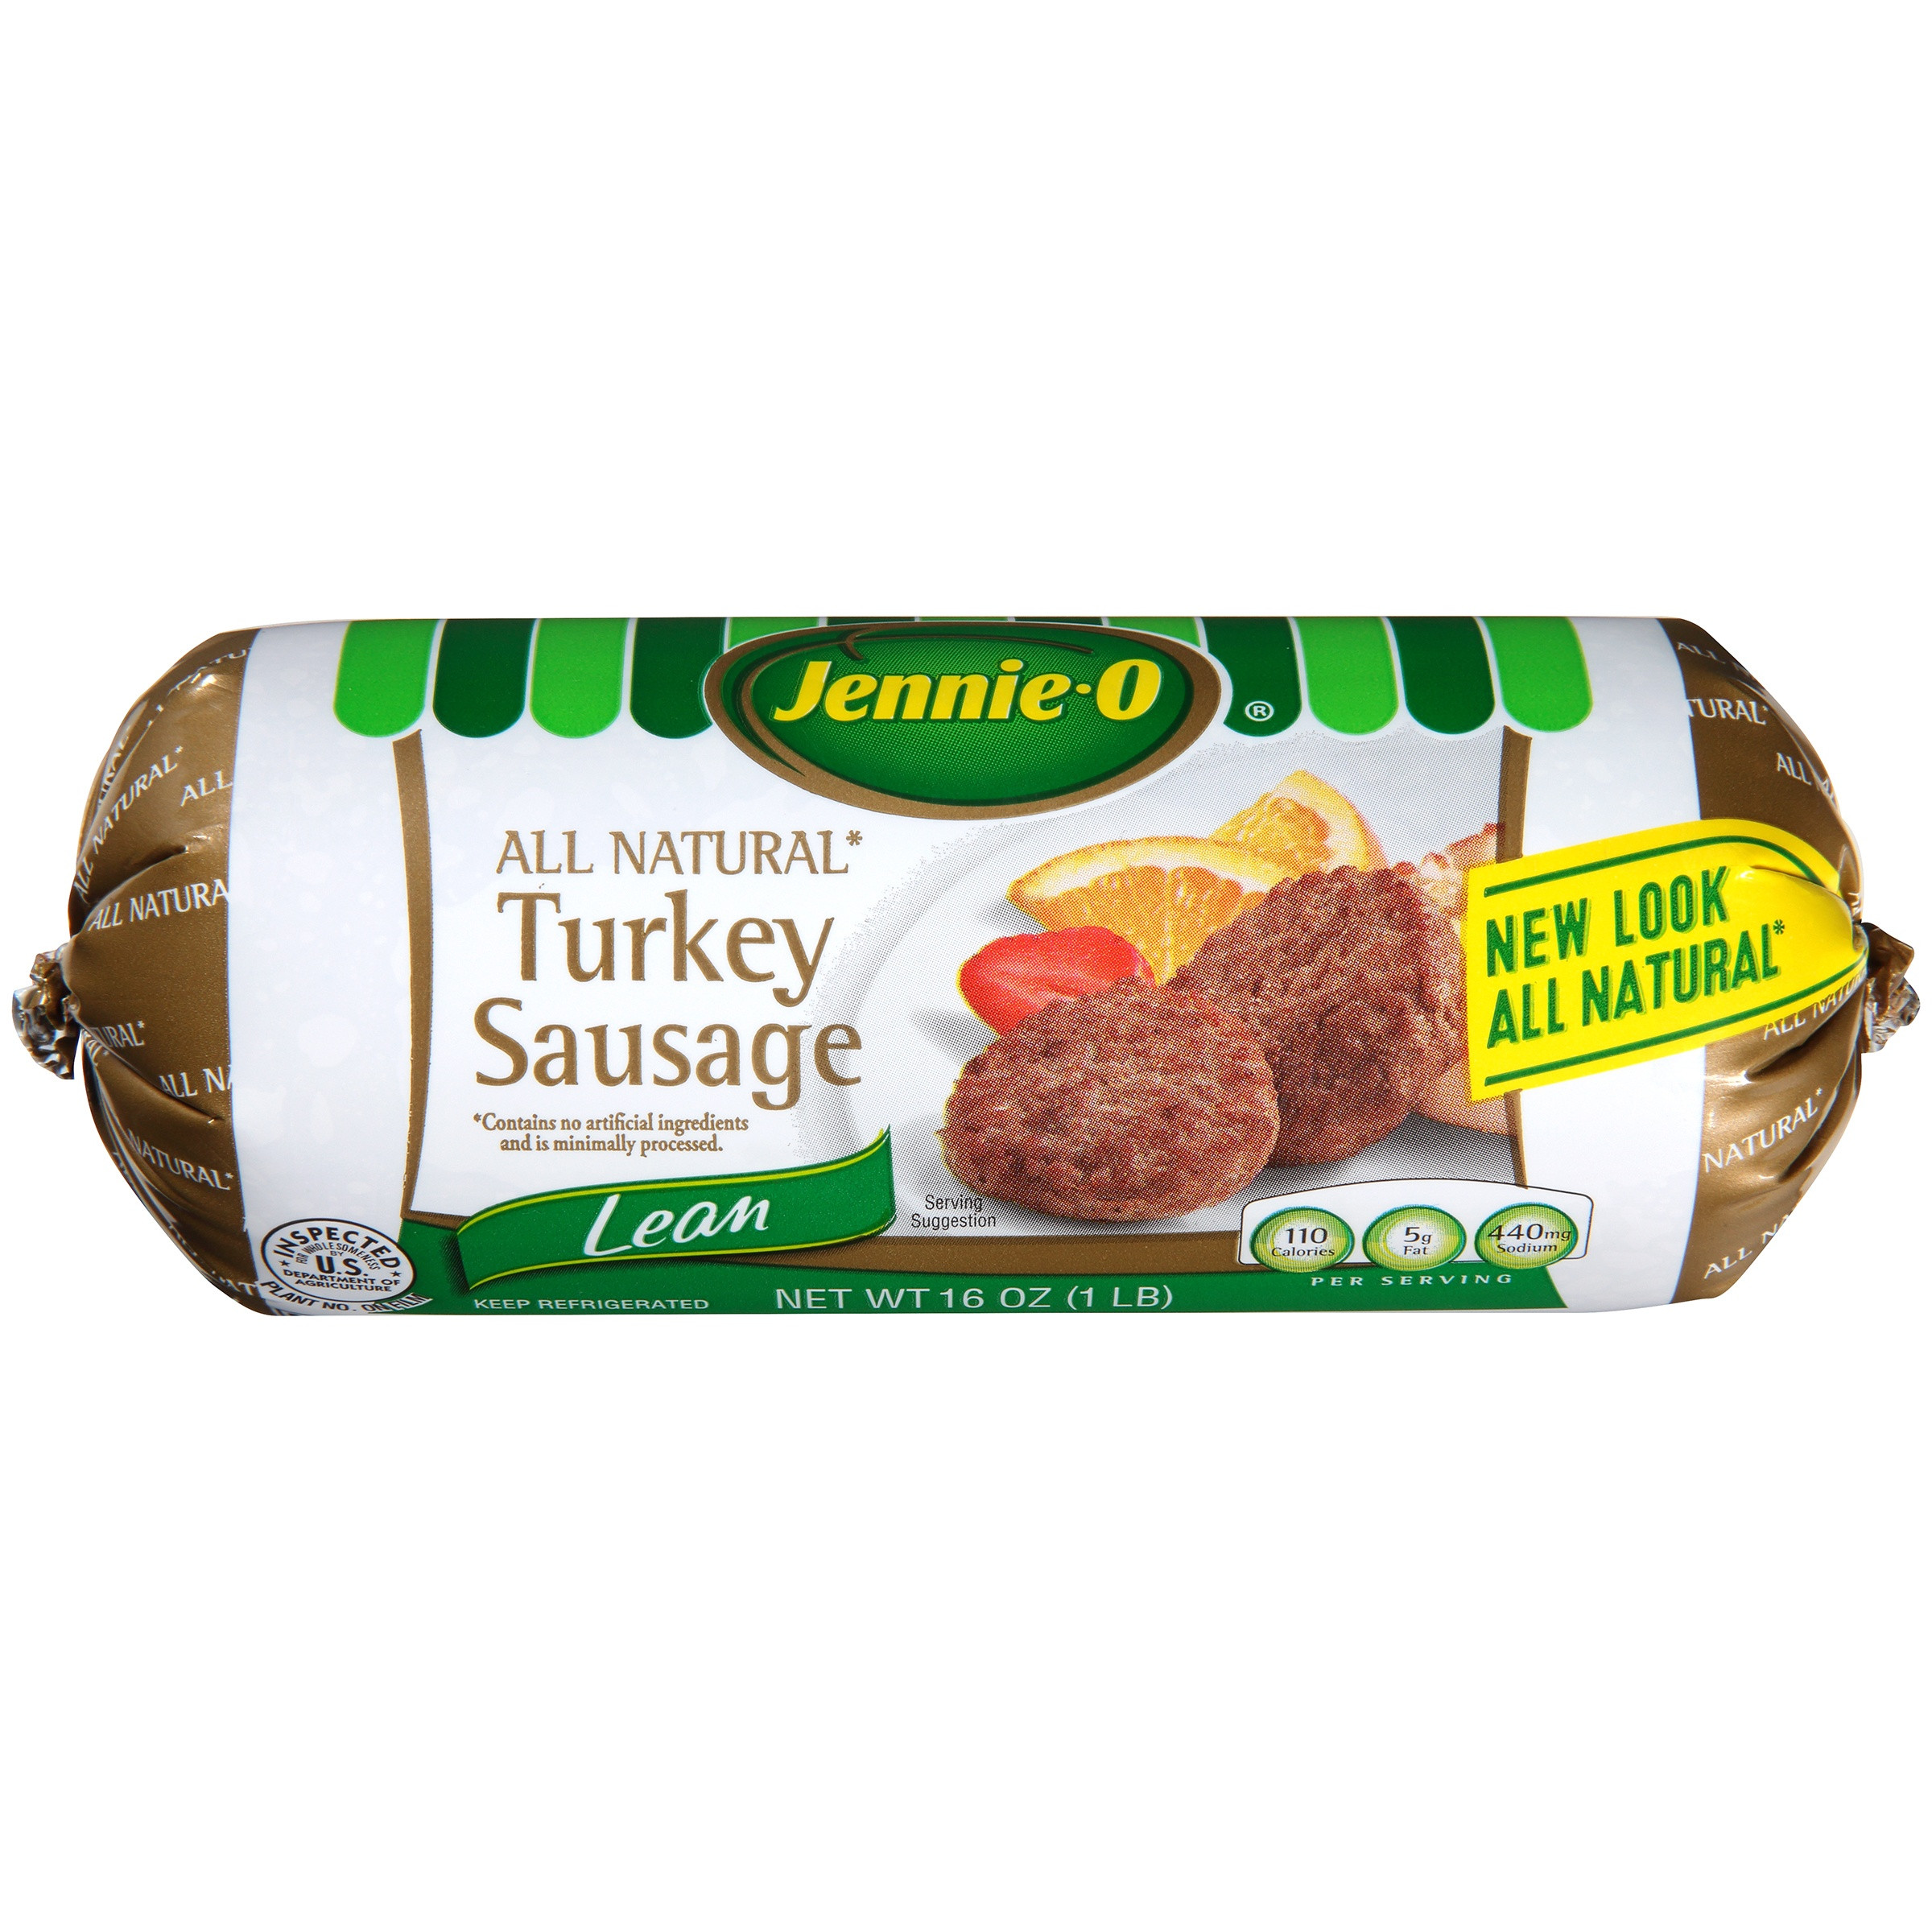 Healthy Turkey Sausage Brands
 healthiest turkey sausage brand